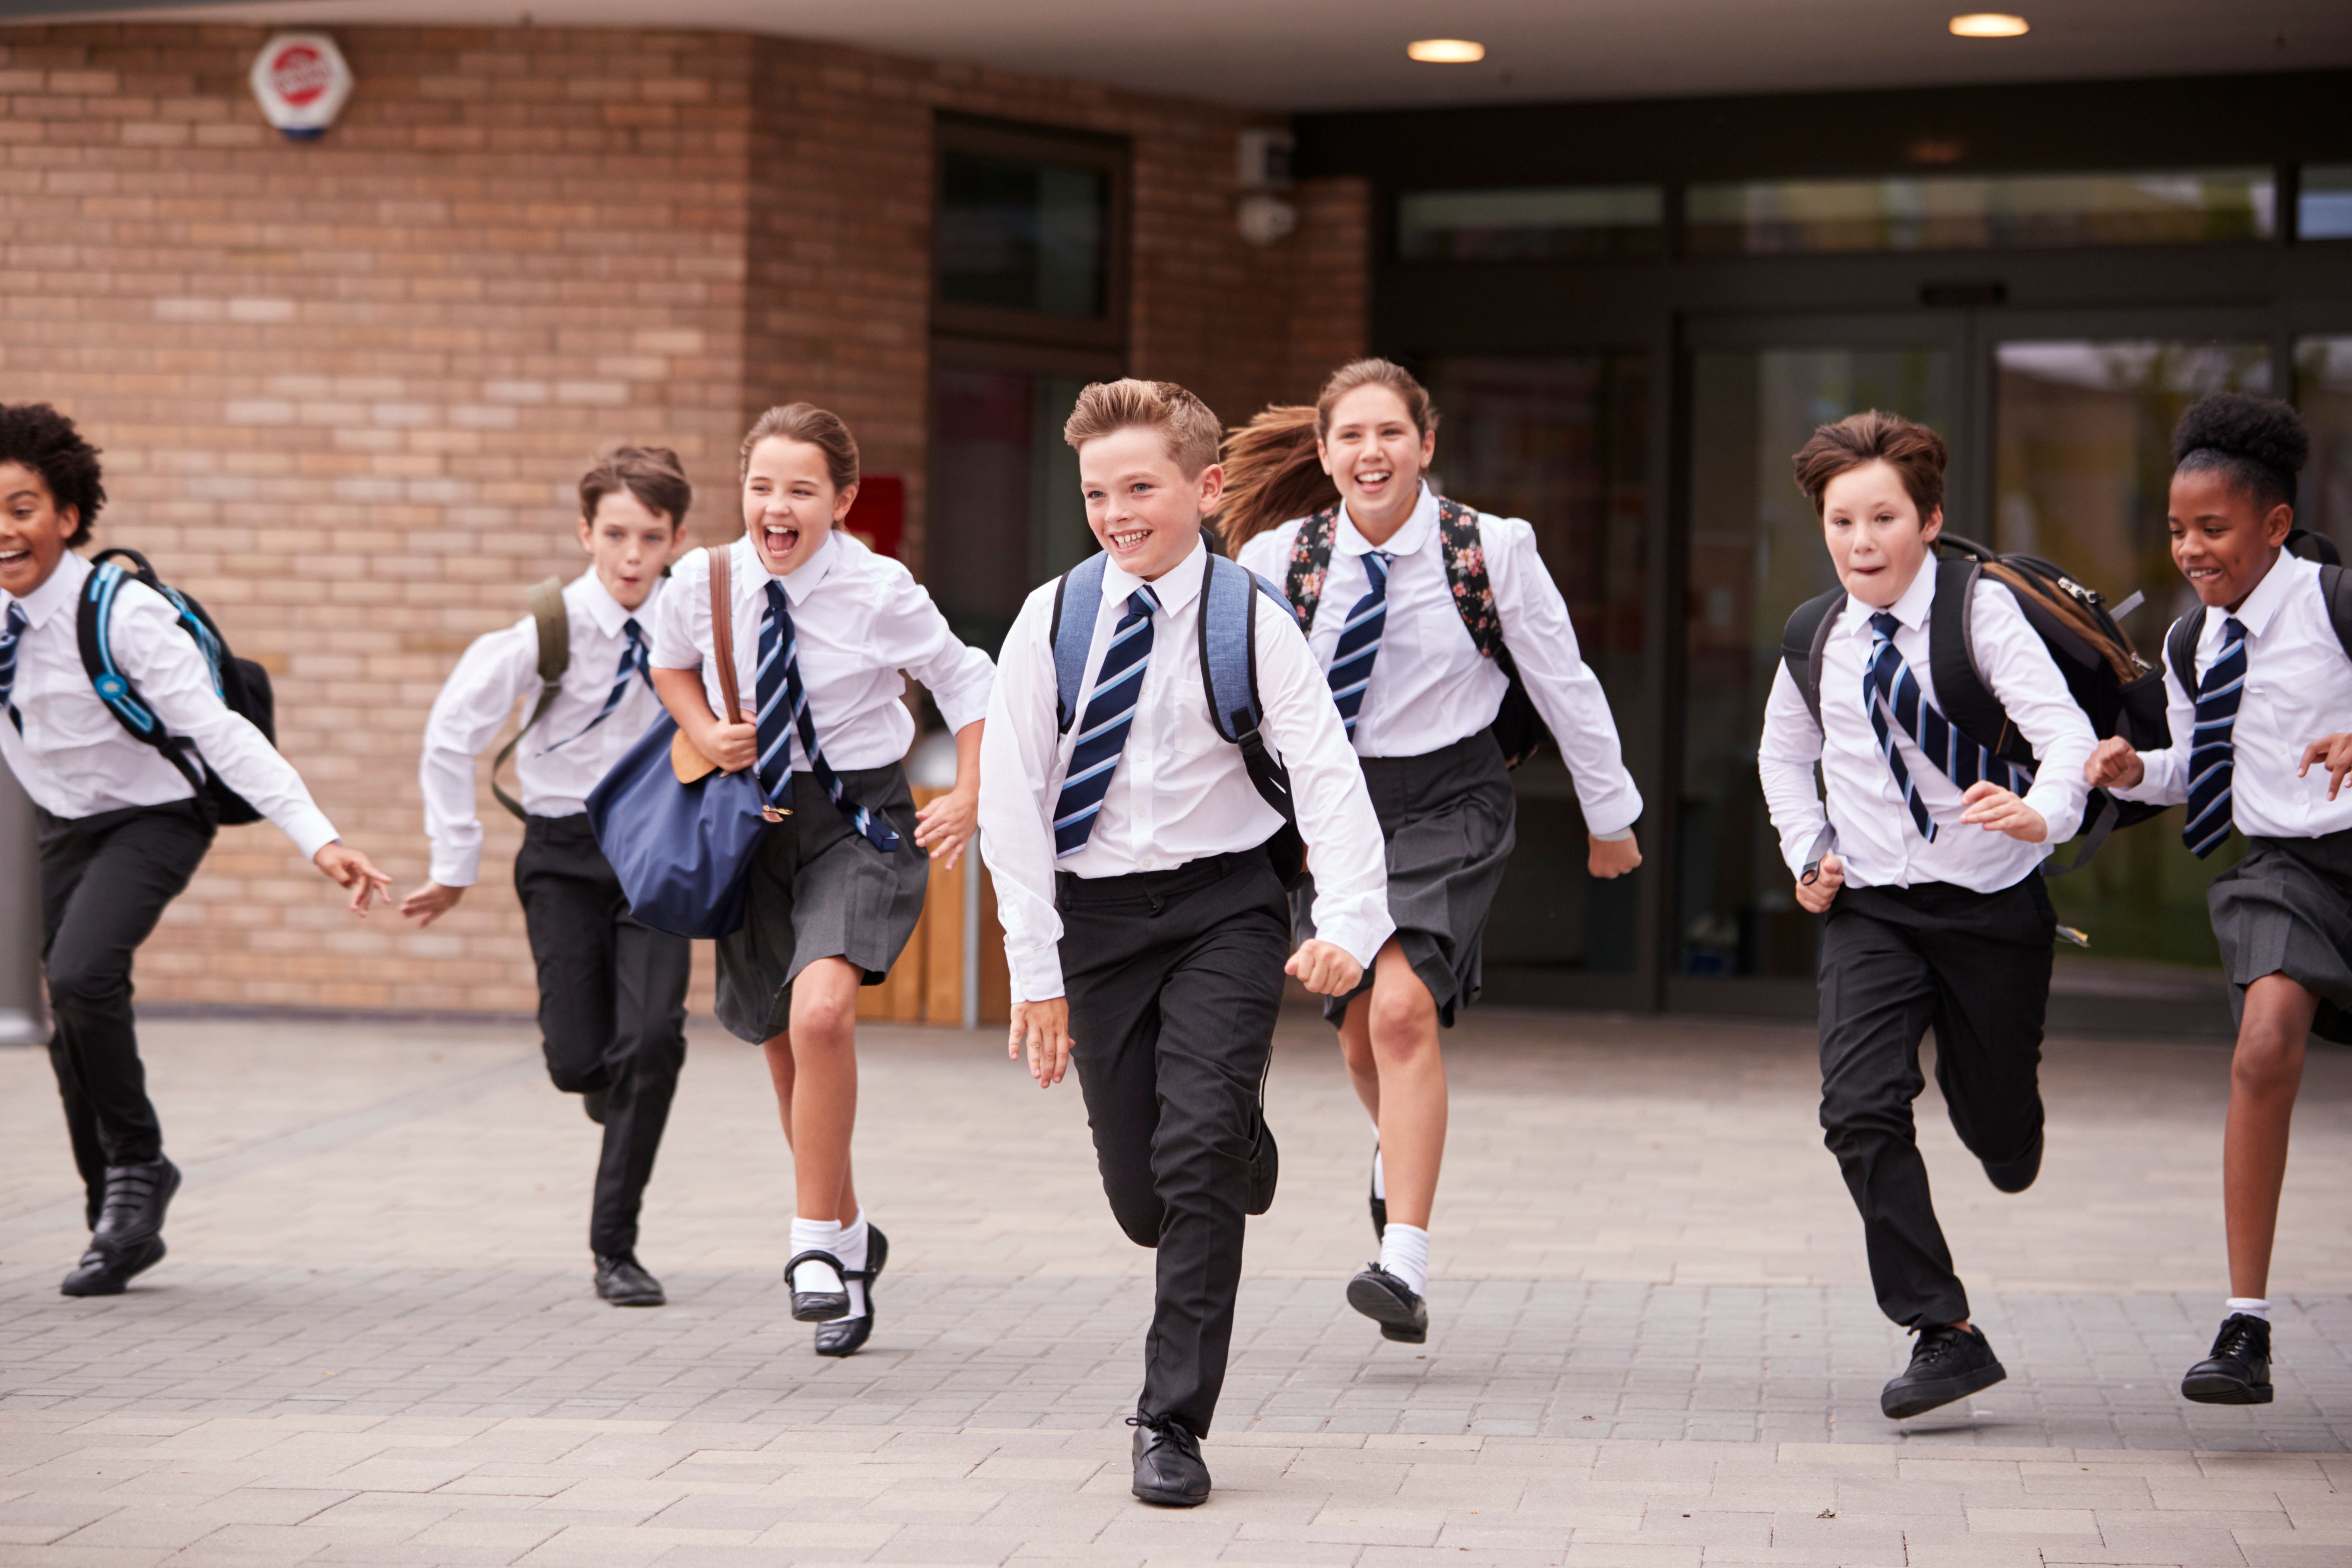 Des élèves courent à l'extérieur de l'école. | Source : Shutterstock